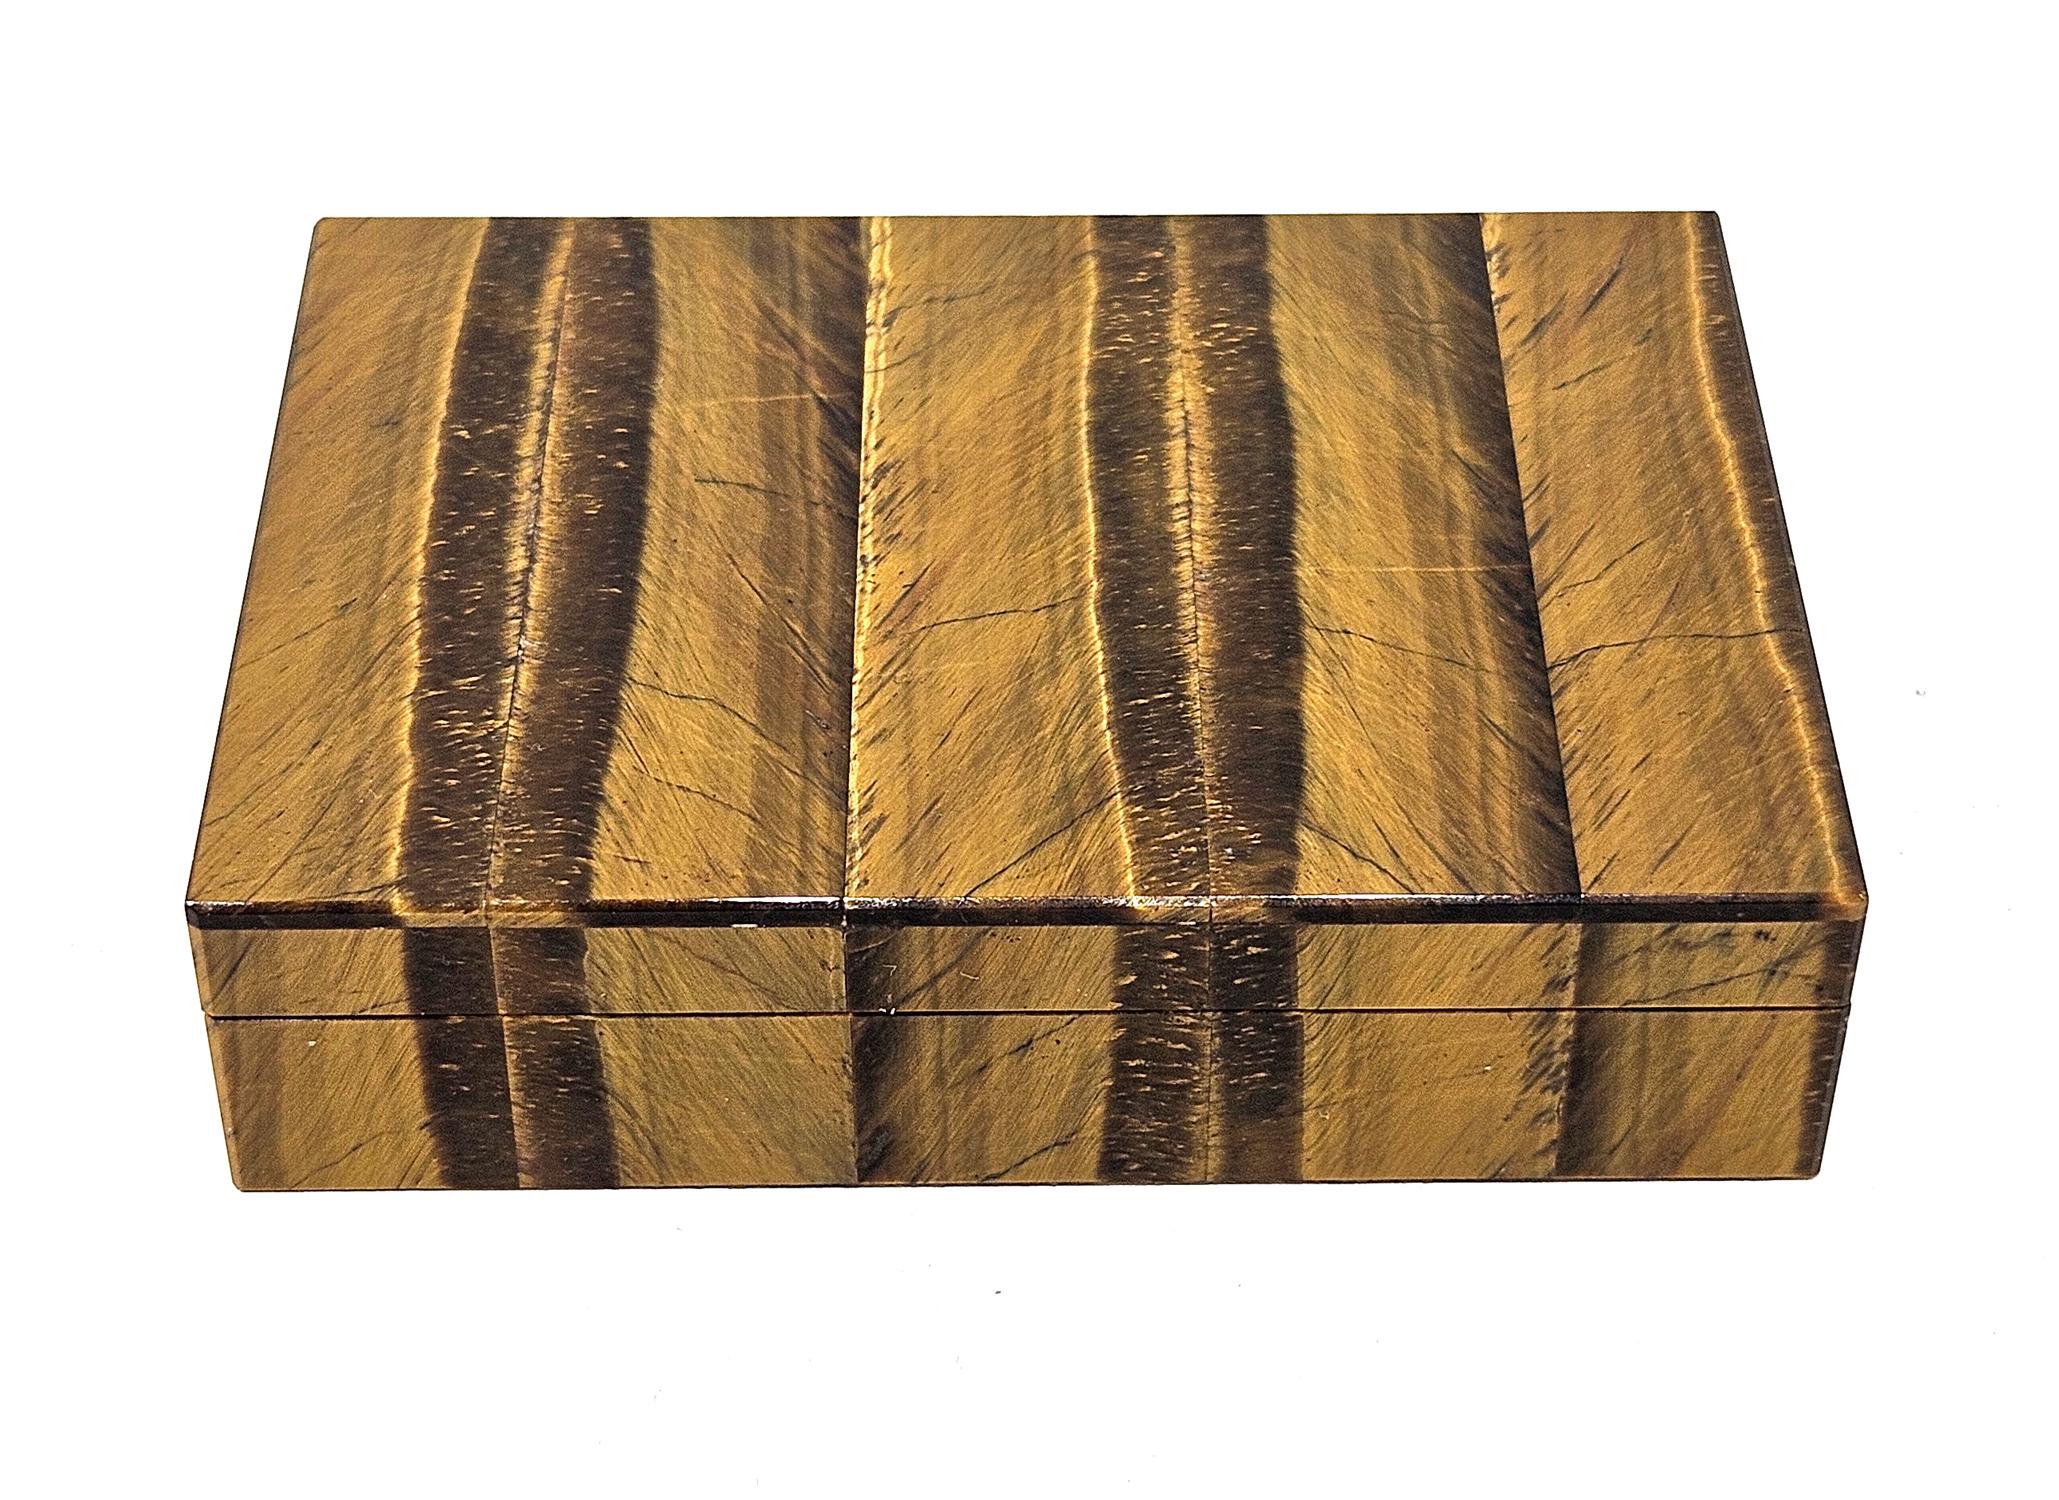 Eine exquisite italienische Tigeraugen-Intarsienschachtel, gestempelt von Gori & Zucchi (später UnoAErre), vertrieben in Ravenna in den 1960er Jahren. 
Die Schatulle ist mit fein gebändertem Tigerauge-Quarz furniert, der ein wunderschönes Muster